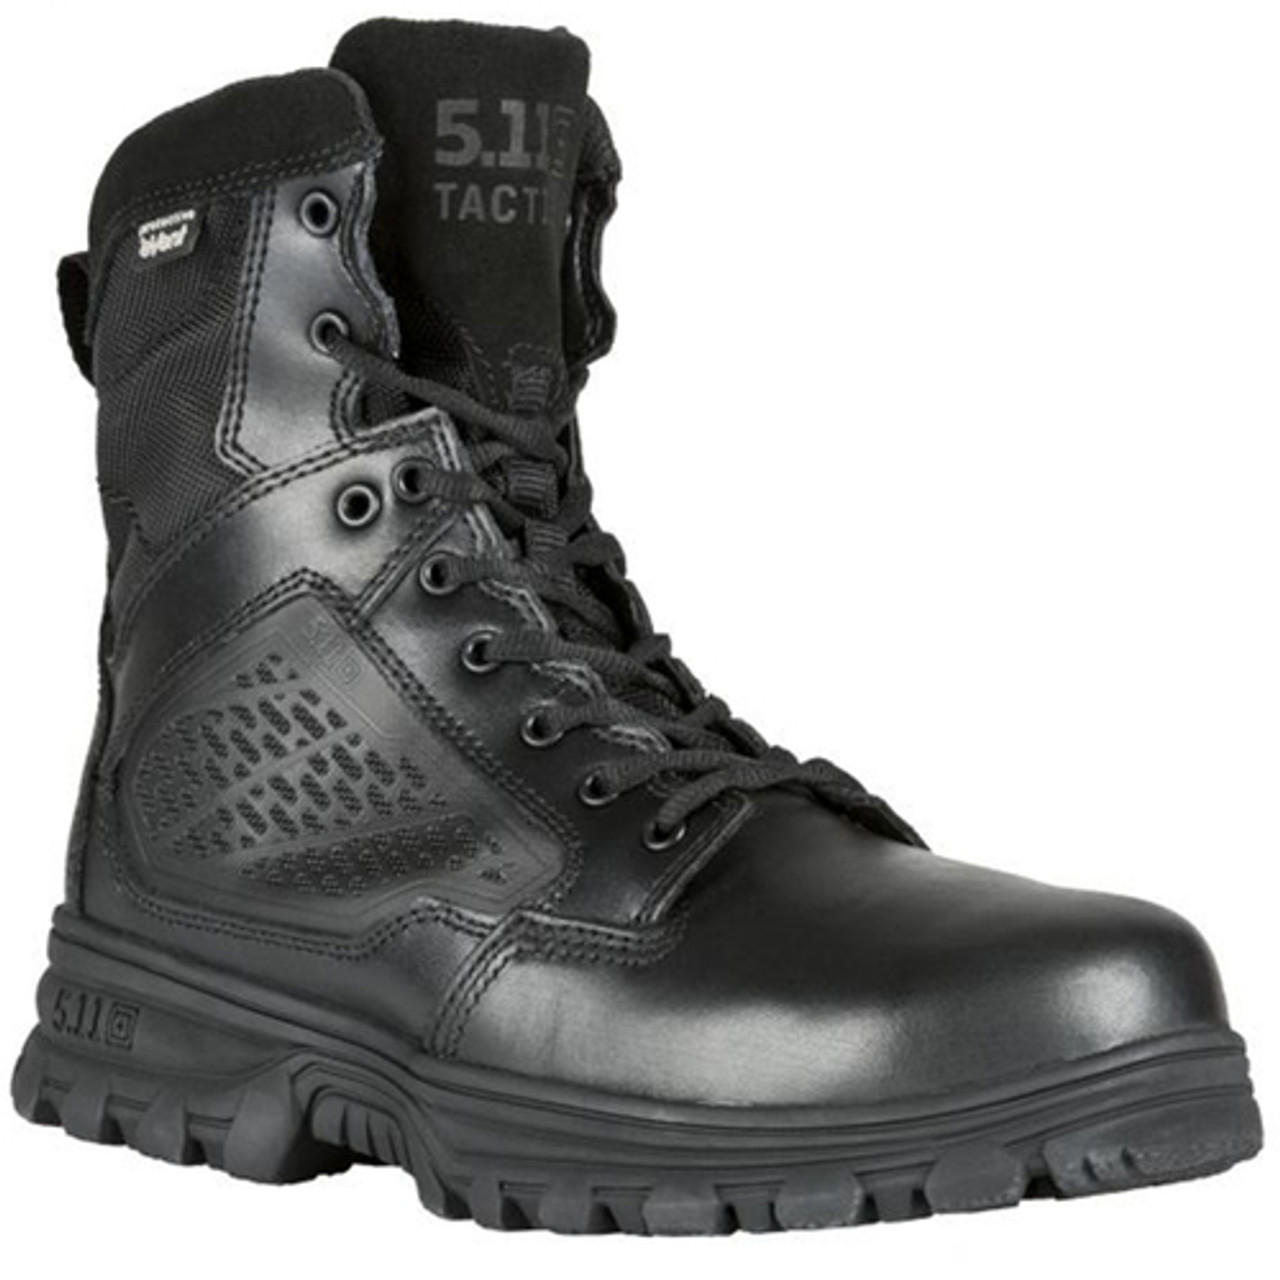 511 slip on boots